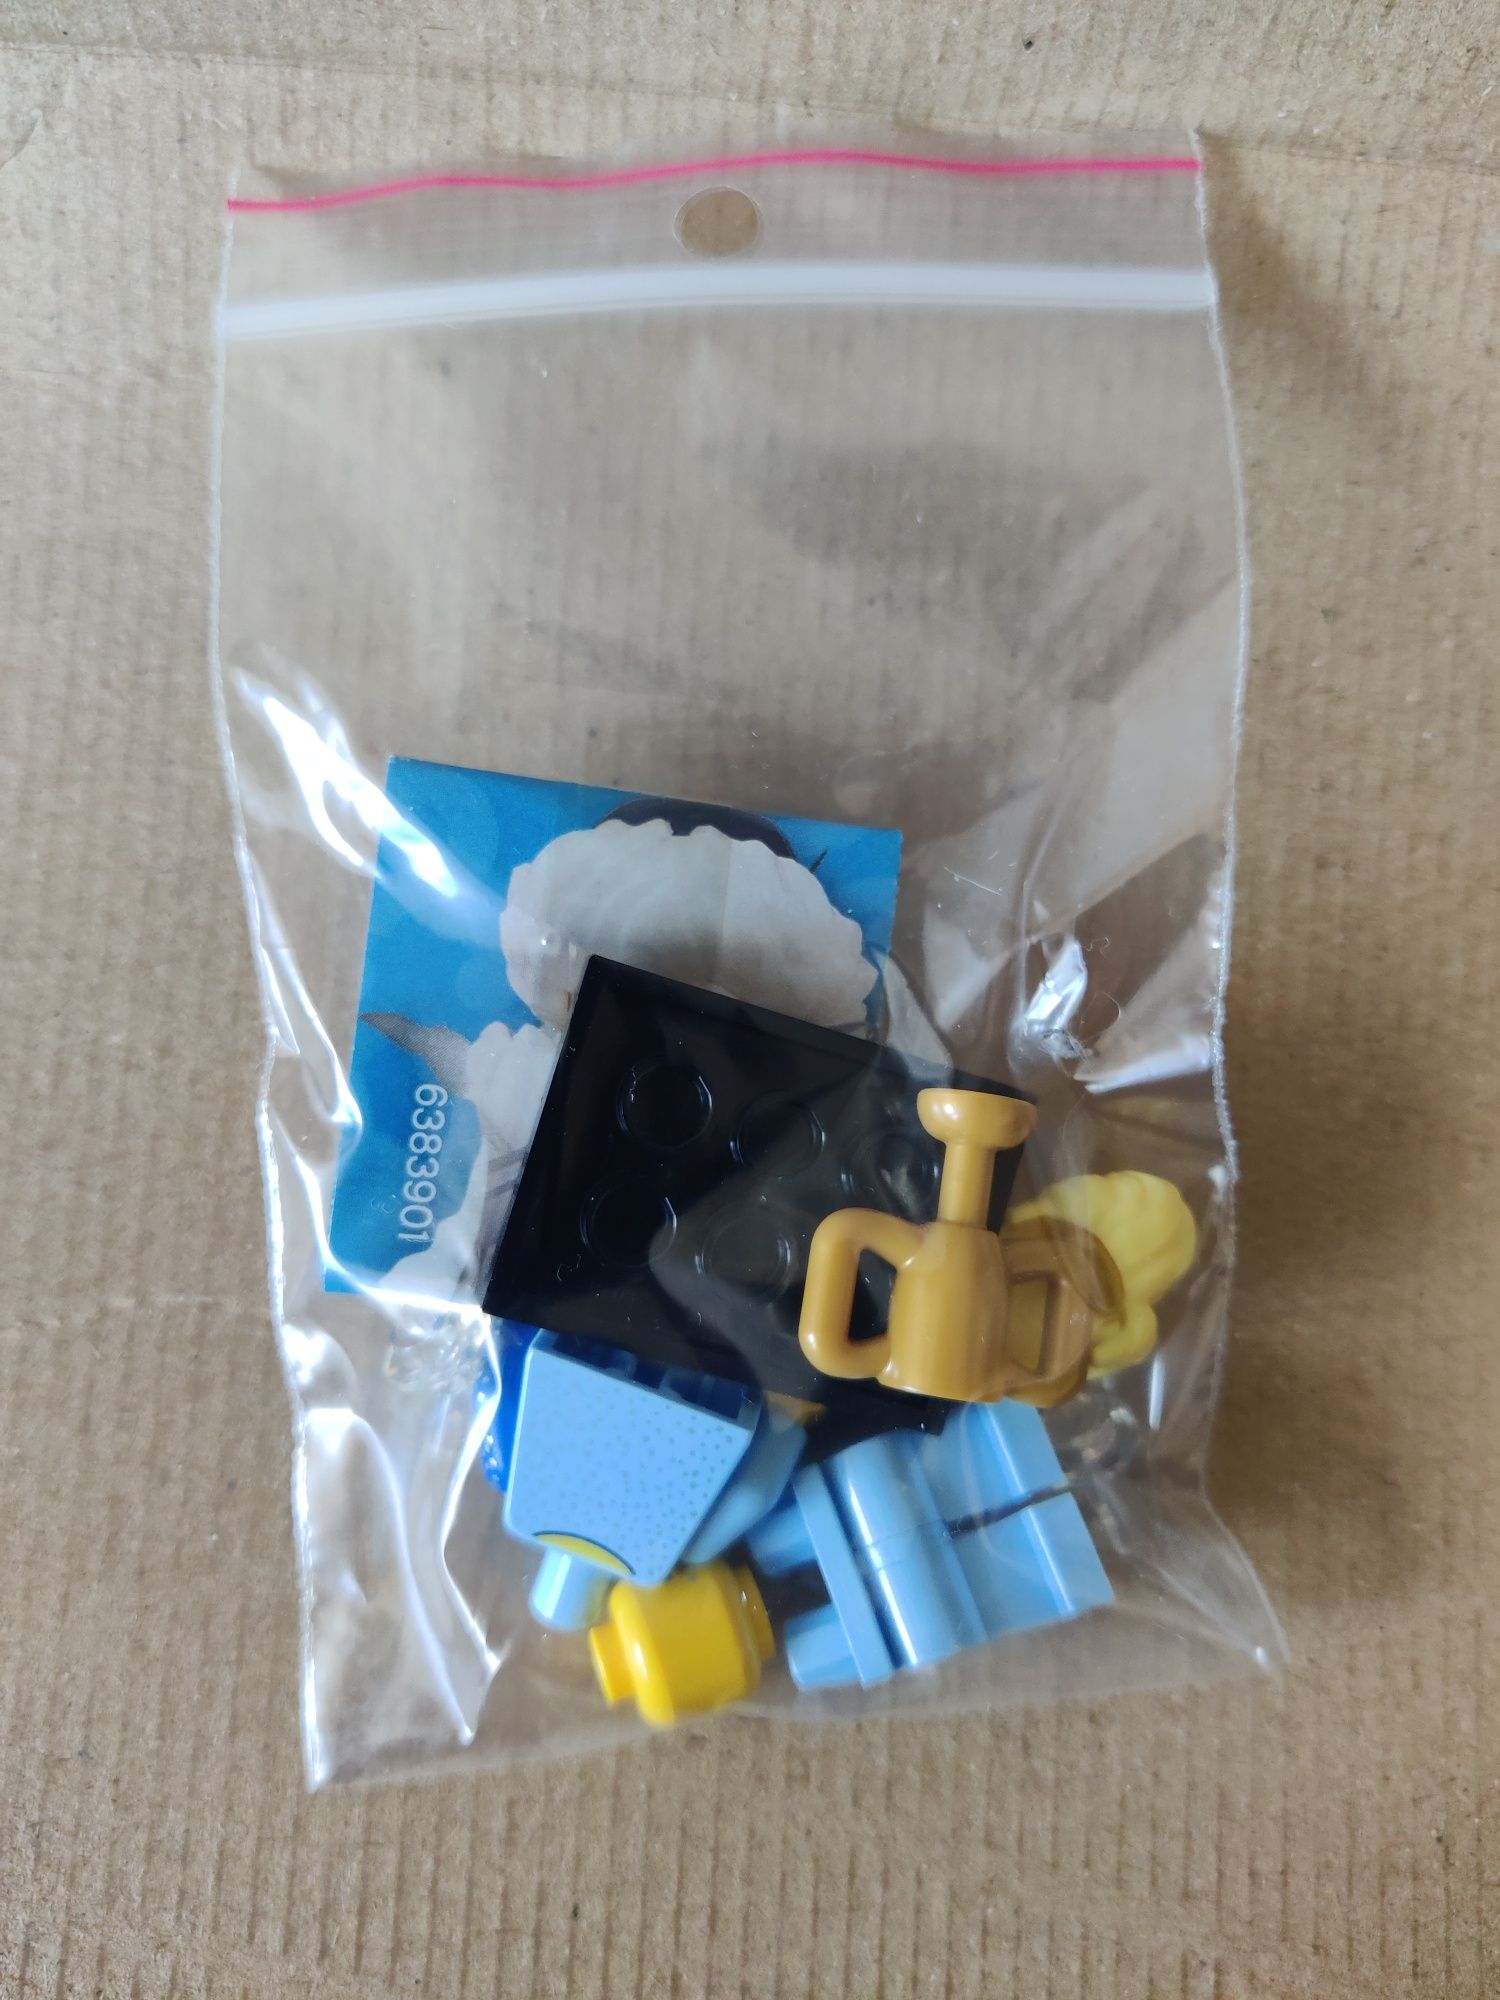 Lego Minifigures 71032 Seria 22 - Łyżwiarz